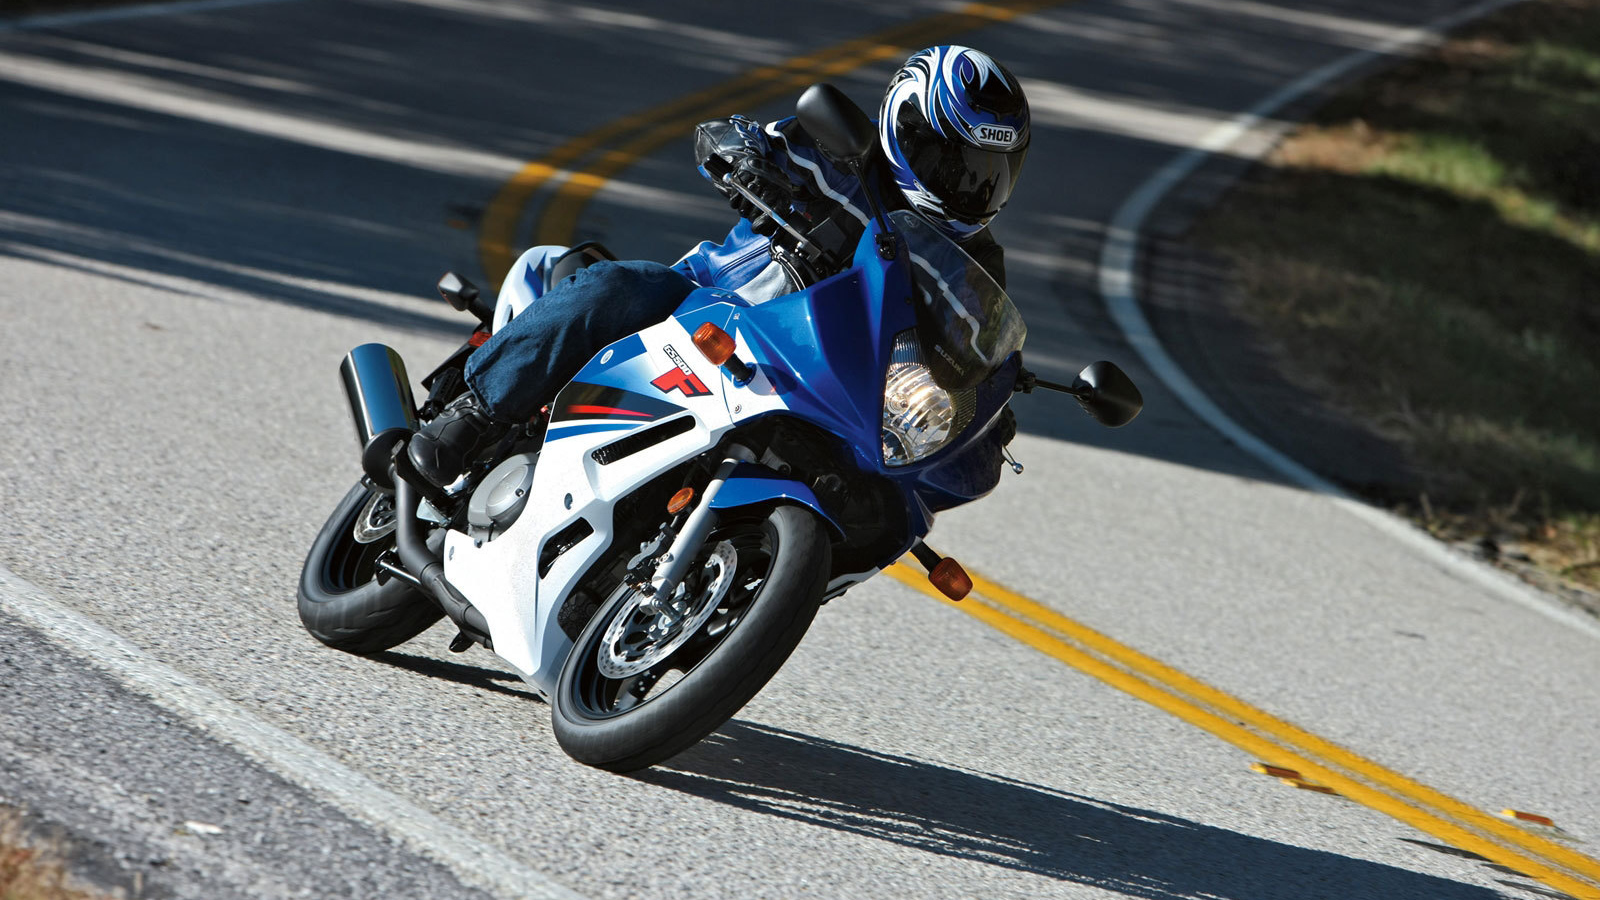 Надежный мотоцикл Suzuki GS 500 F